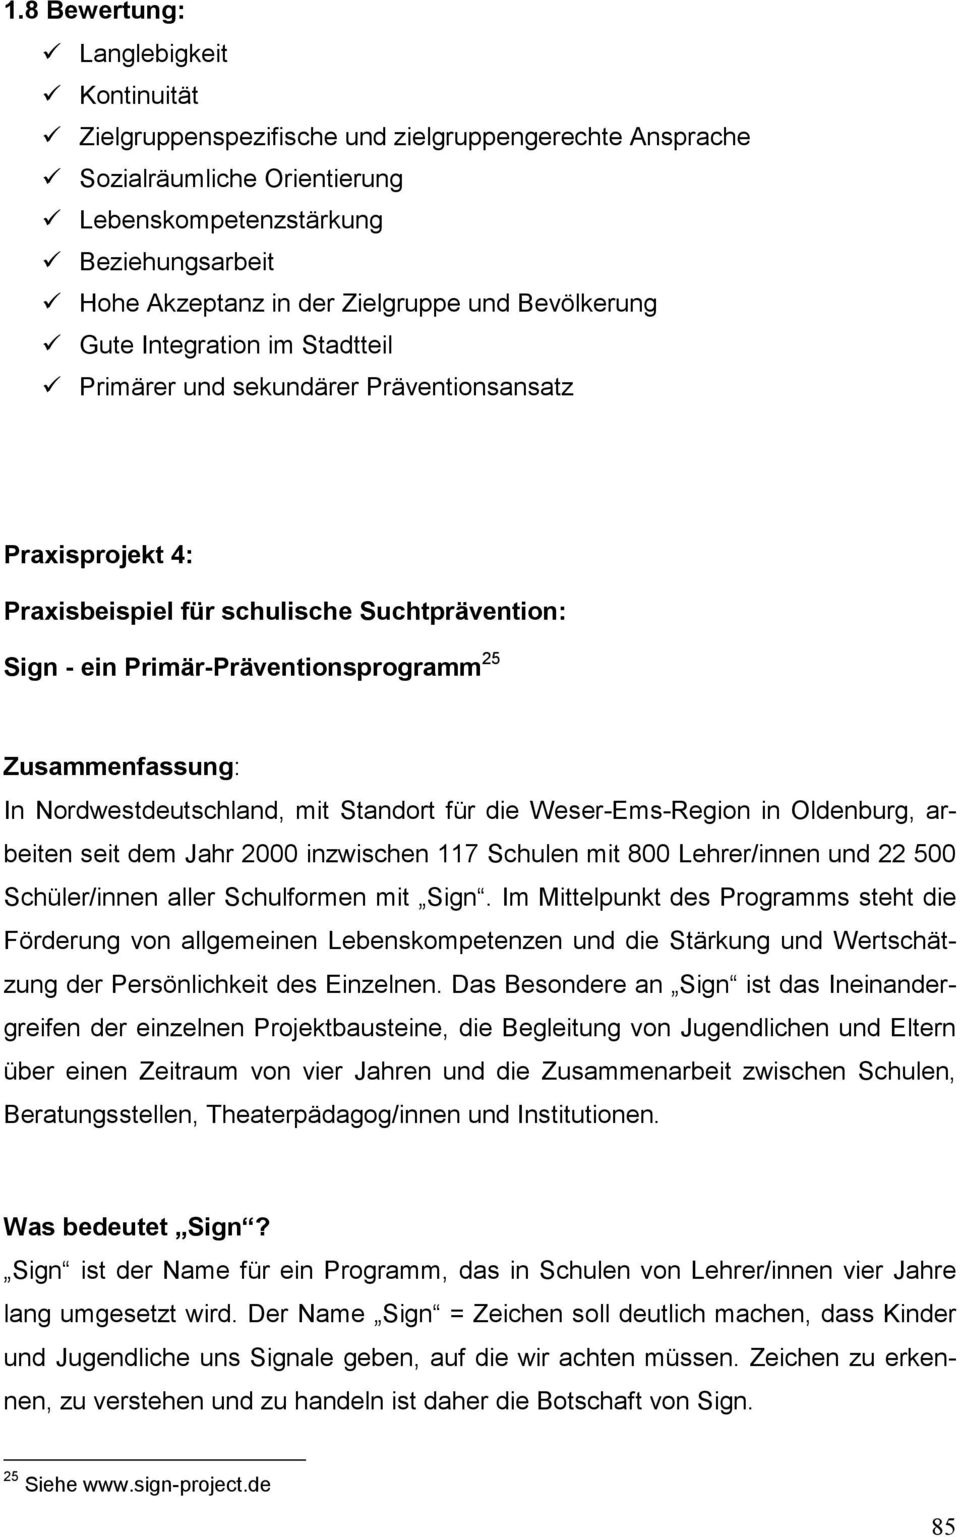 Primär-Präventionsprogramm 25 Zusammenfassung: In Nordwestdeutschland, mit Standort für die Weser-Ems-Region in Oldenburg, arbeiten seit dem Jahr 2000 inzwischen 117 Schulen mit 800 Lehrer/innen und